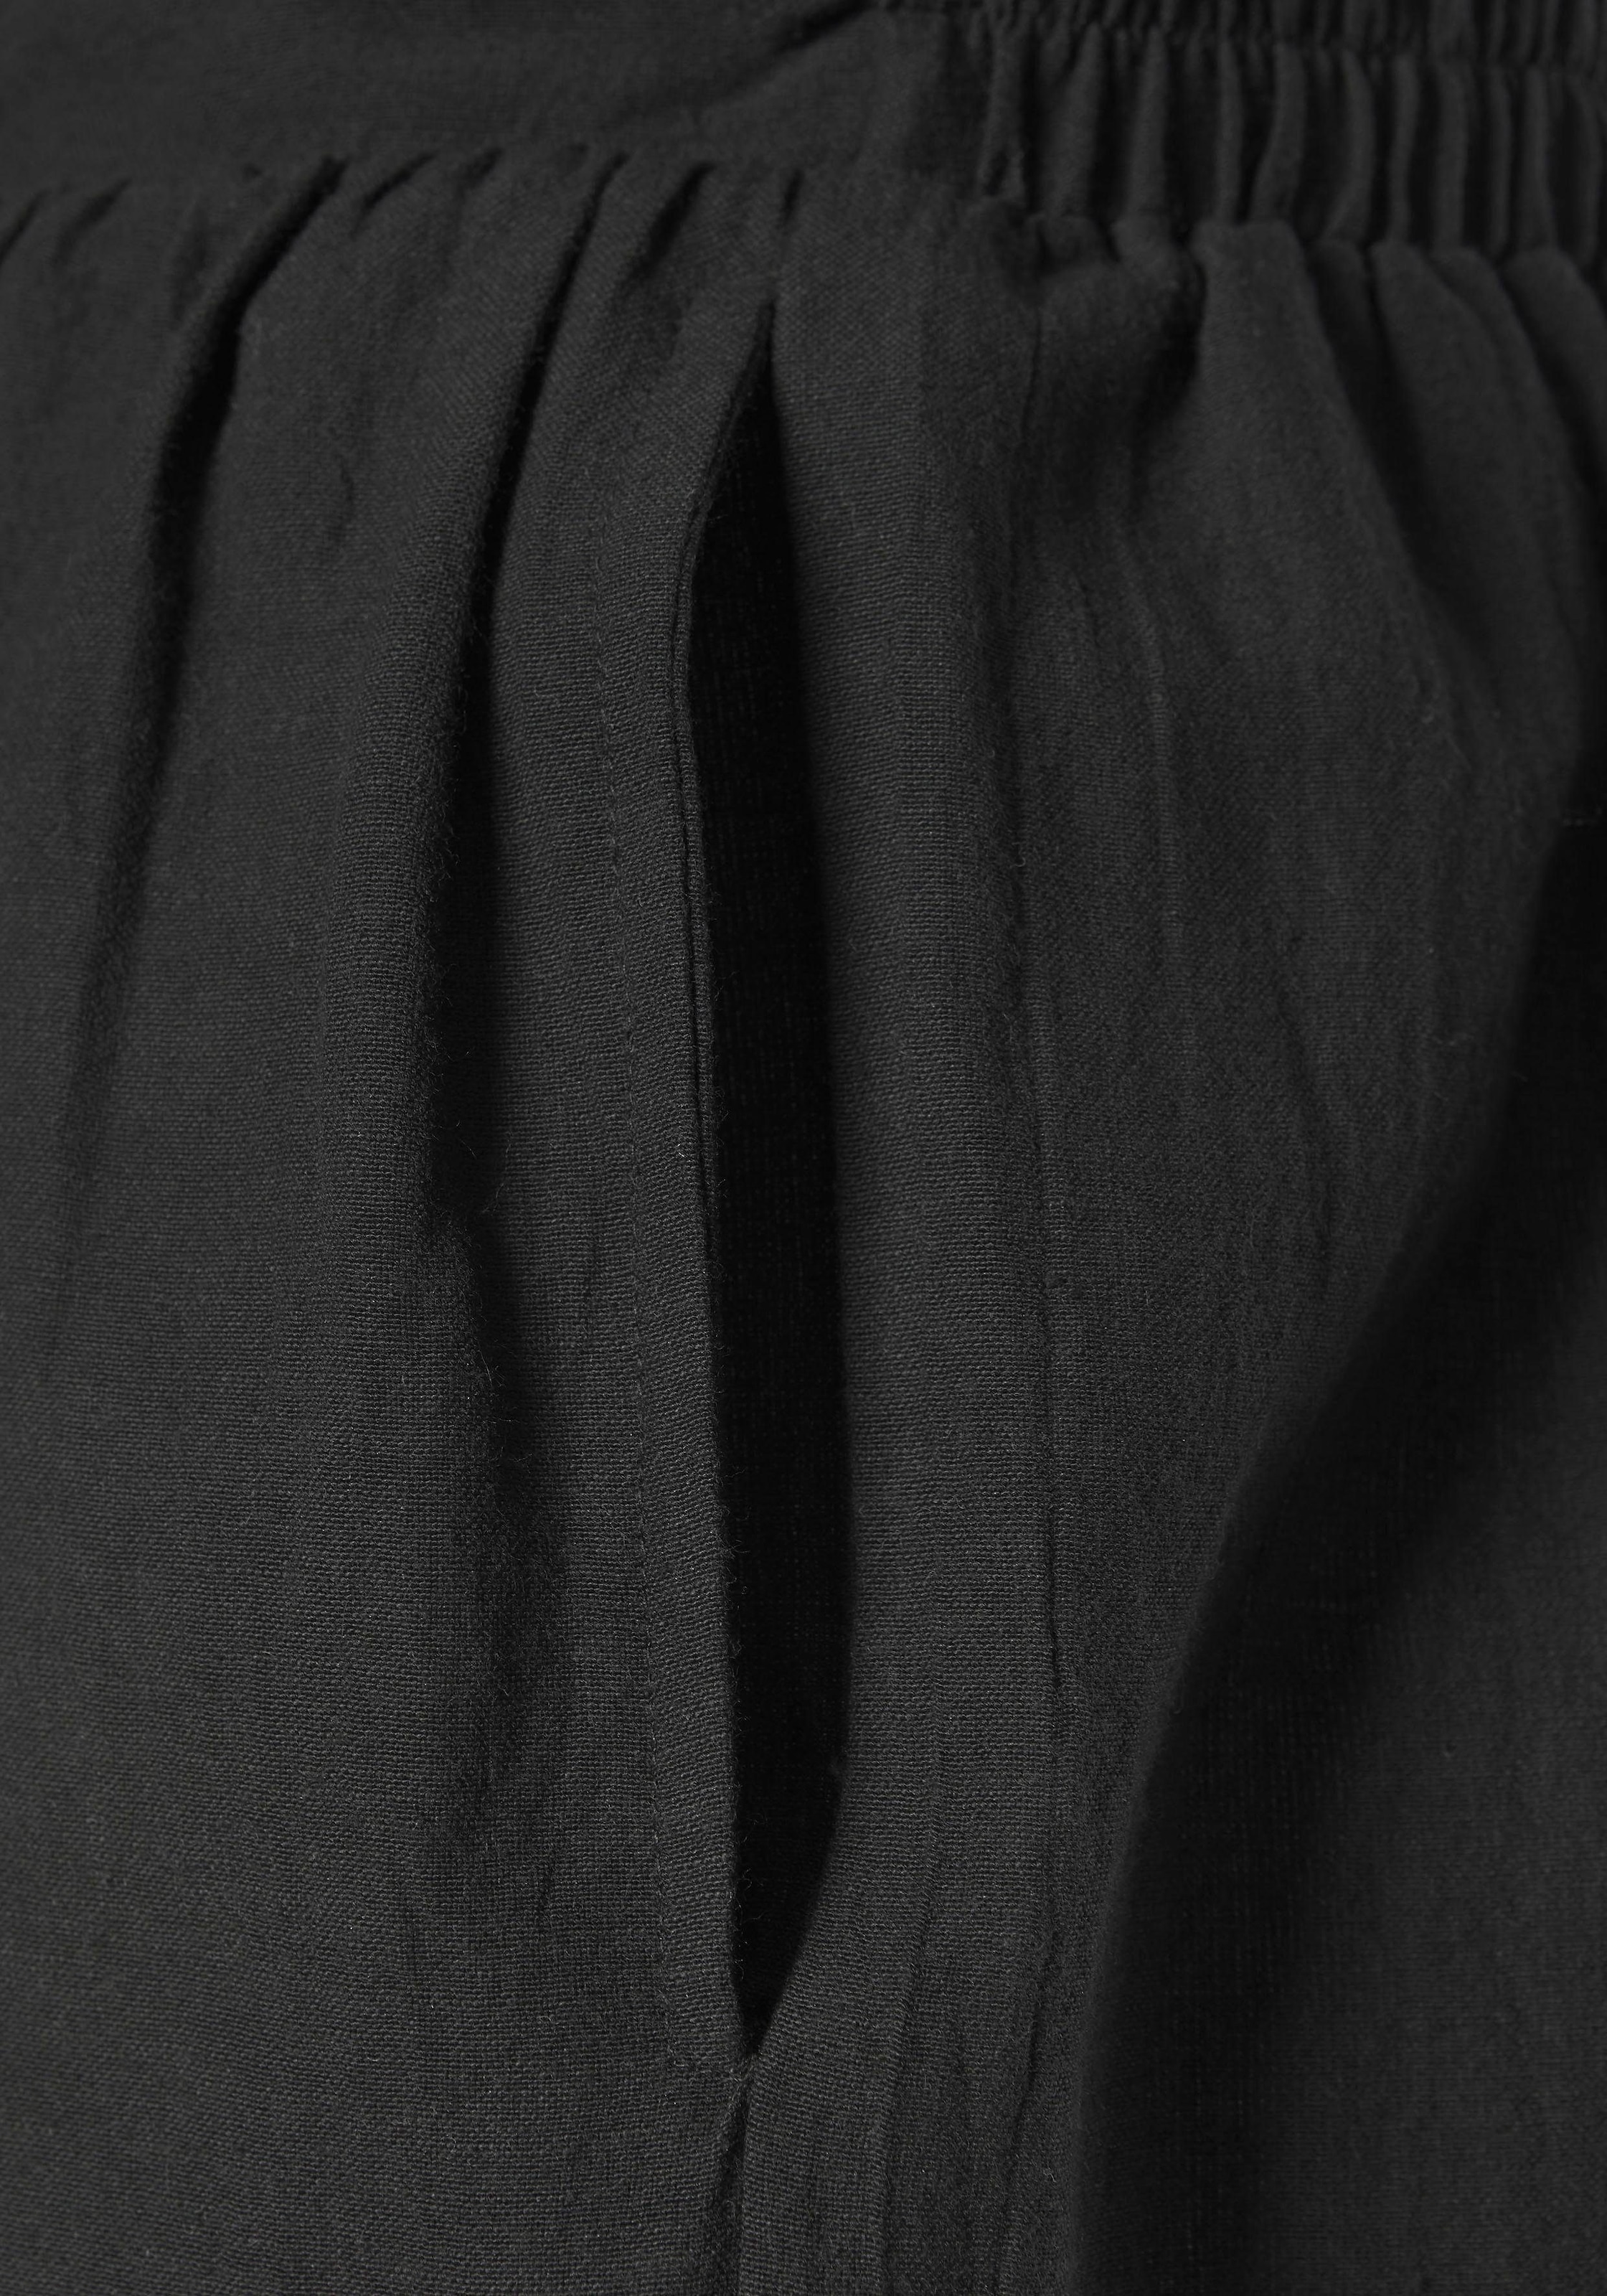 LASCANA Shorts, im Paperbag-Look mit breitem Bündchen und Taschen, kurze Hose